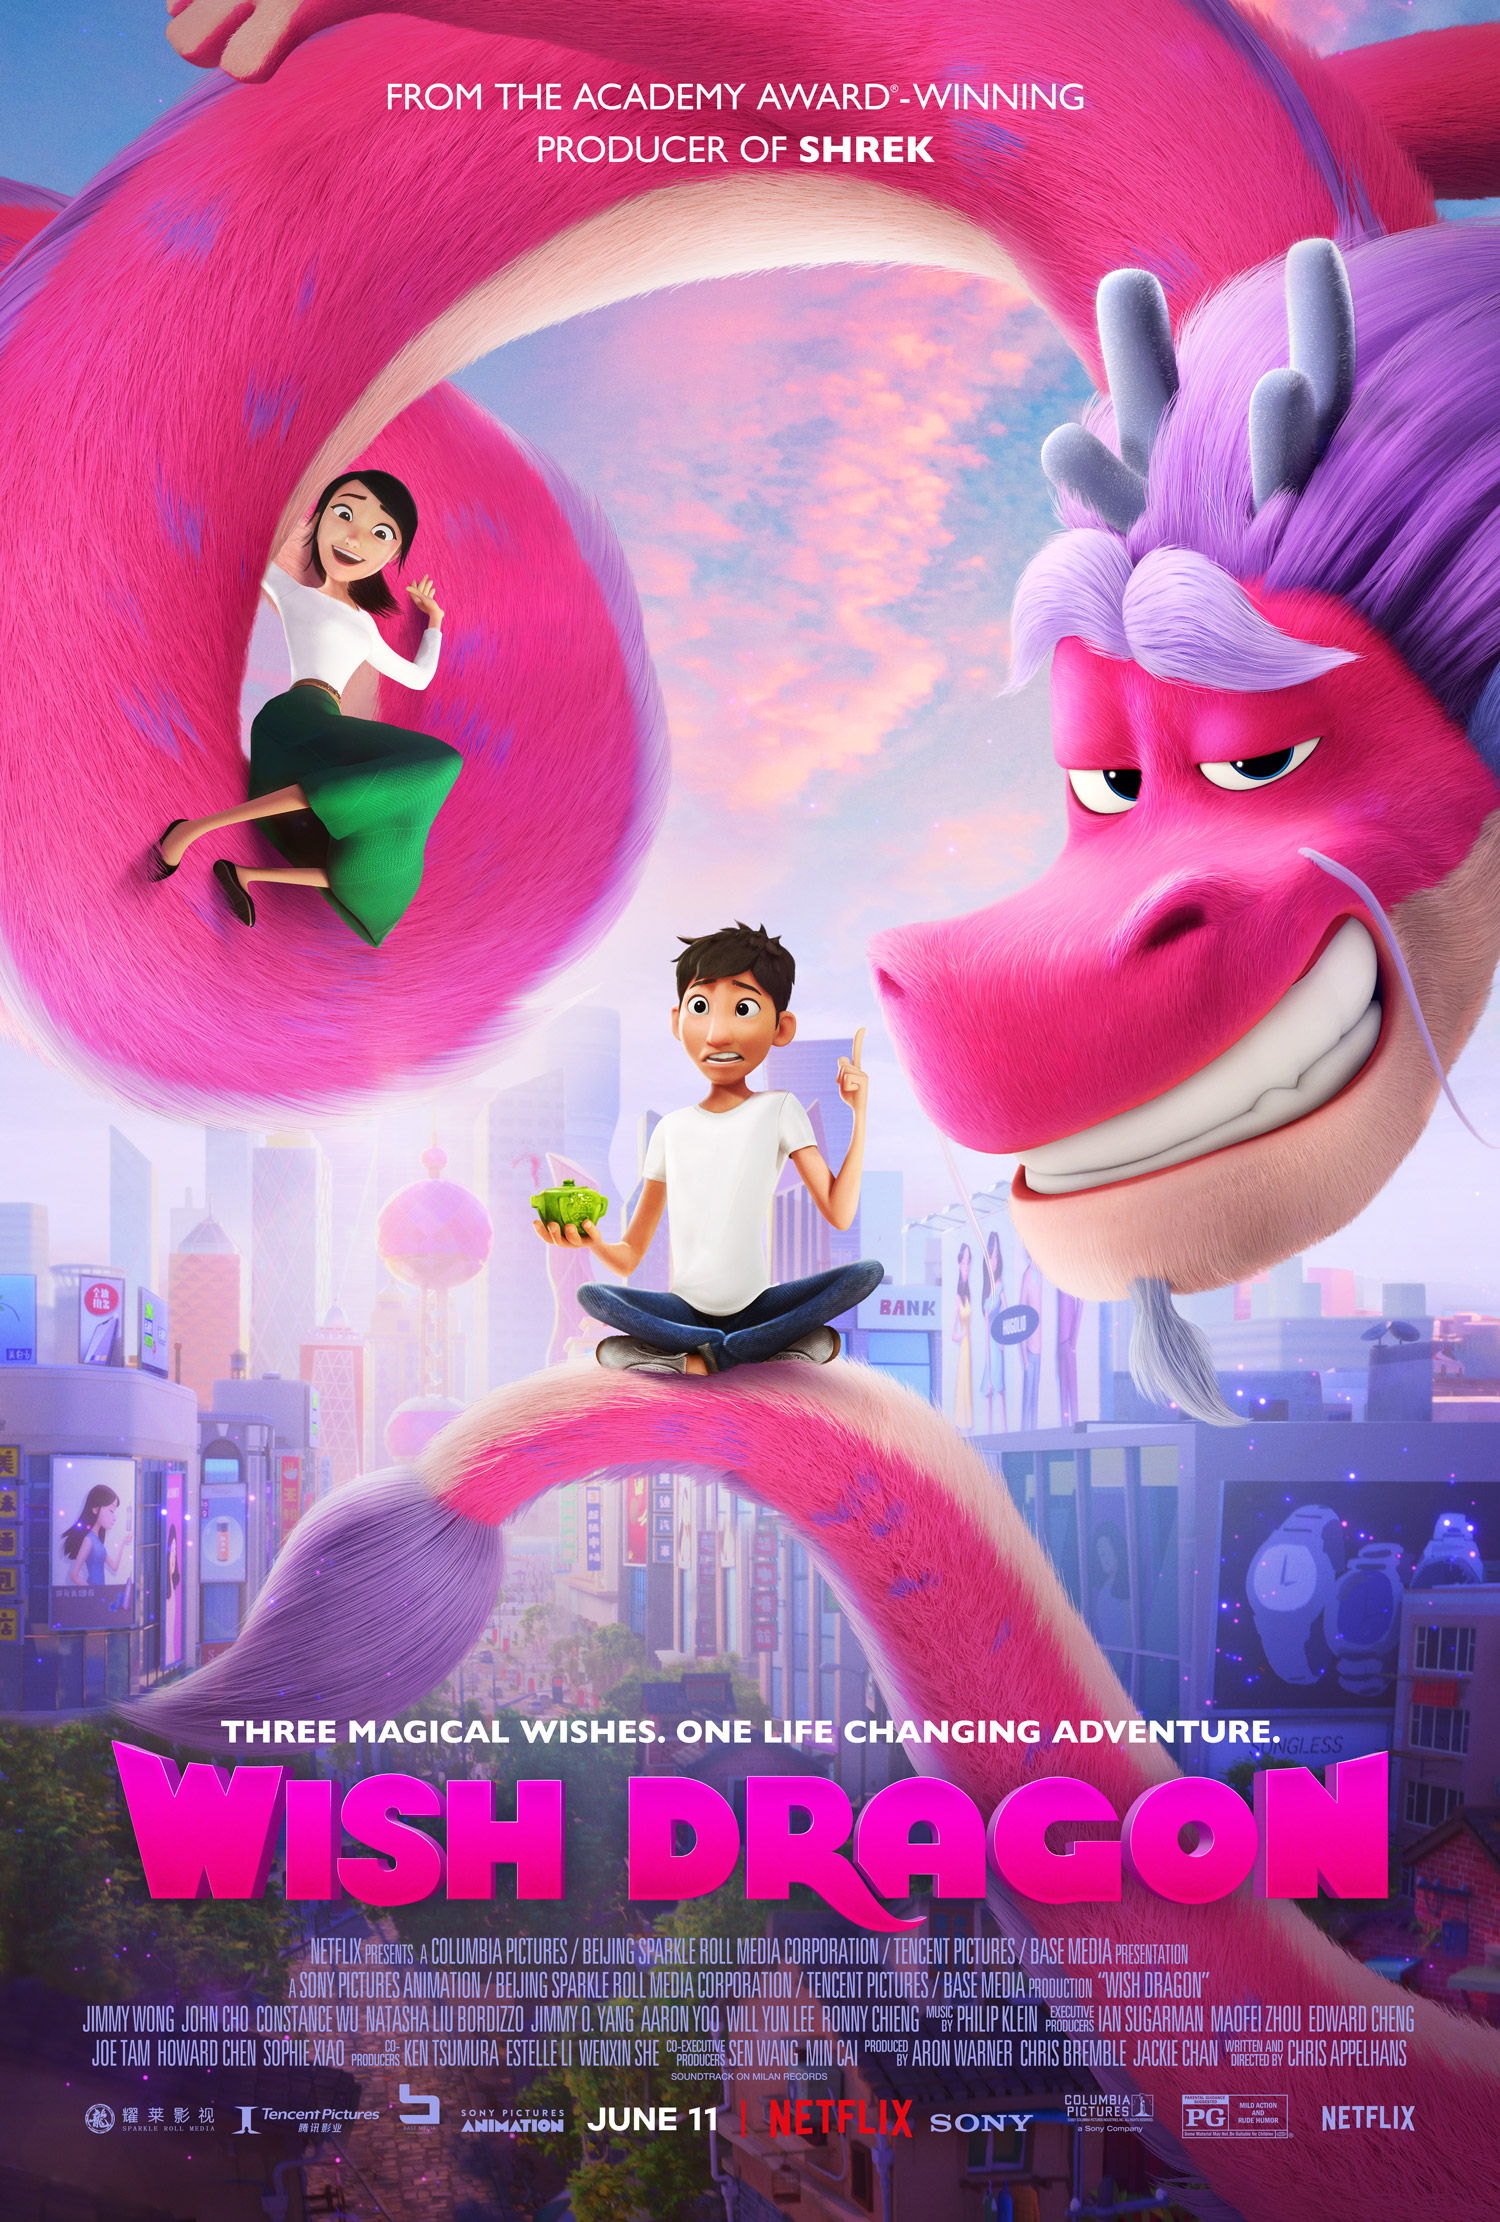 Wish Dragon | Sony Pictures Animation Wiki | Fandom